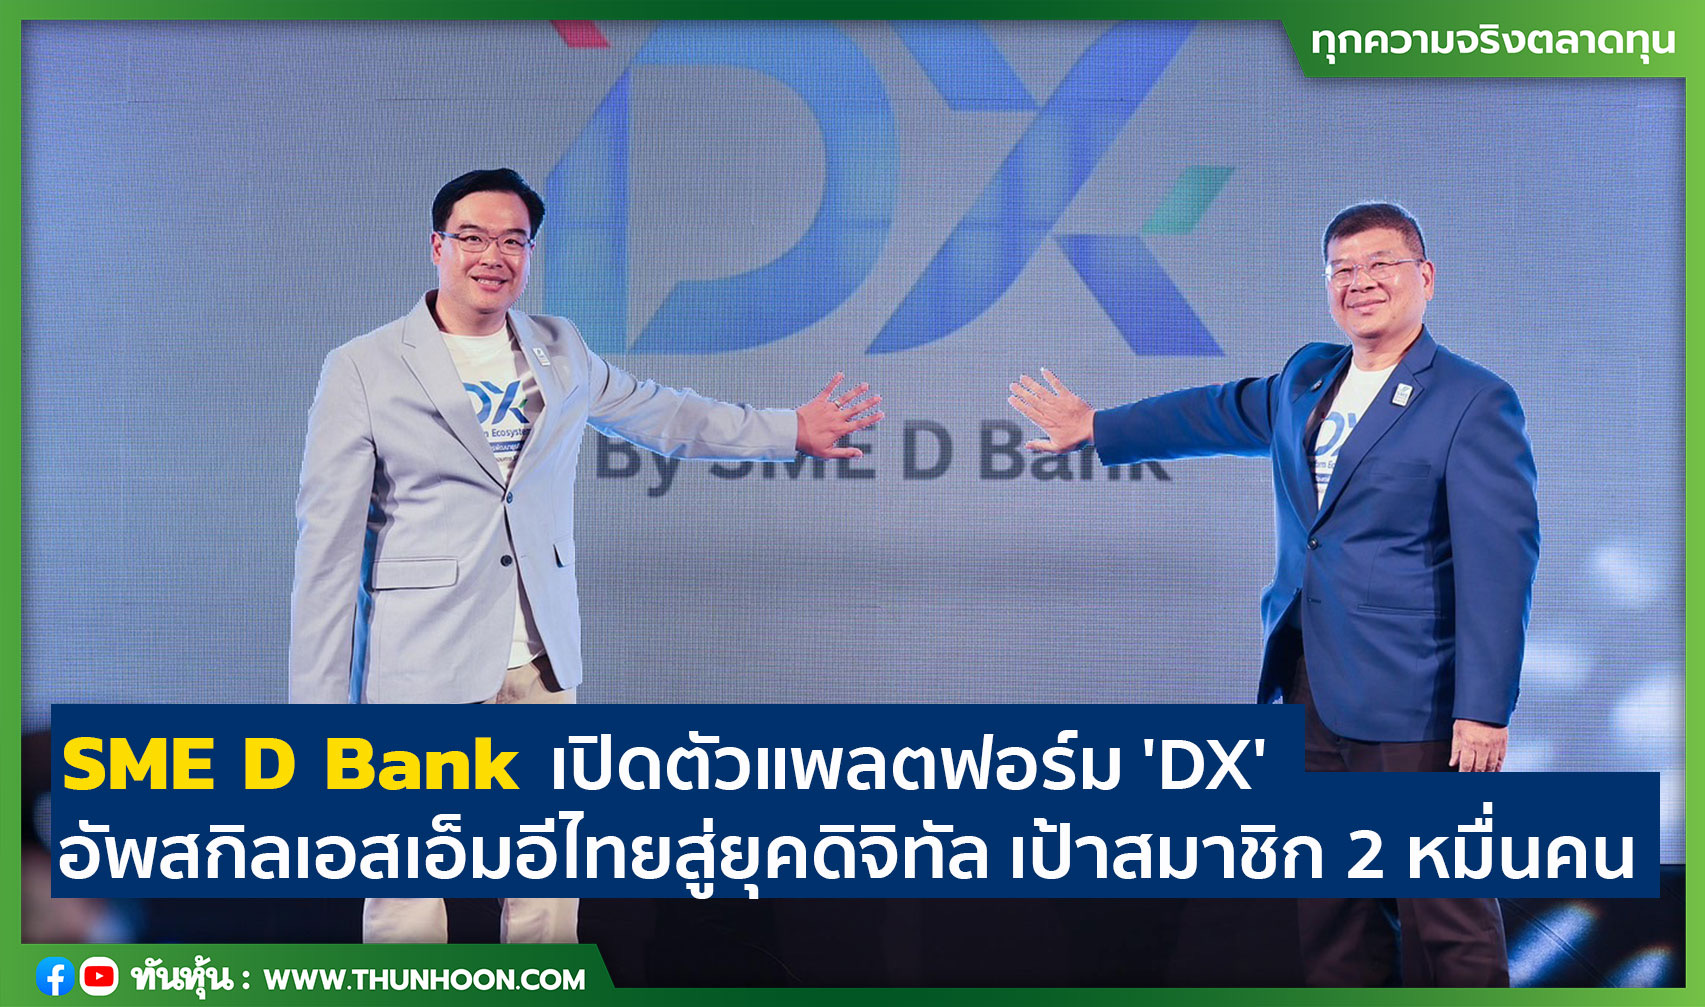 SME D Bank เปิดตัวแพลตฟอร์ม 'DX' อัพสกิลเอสเอ็มอีไทยสู่ยุคดิจิทัล เป้าสมาชิก 2 หมื่นคน